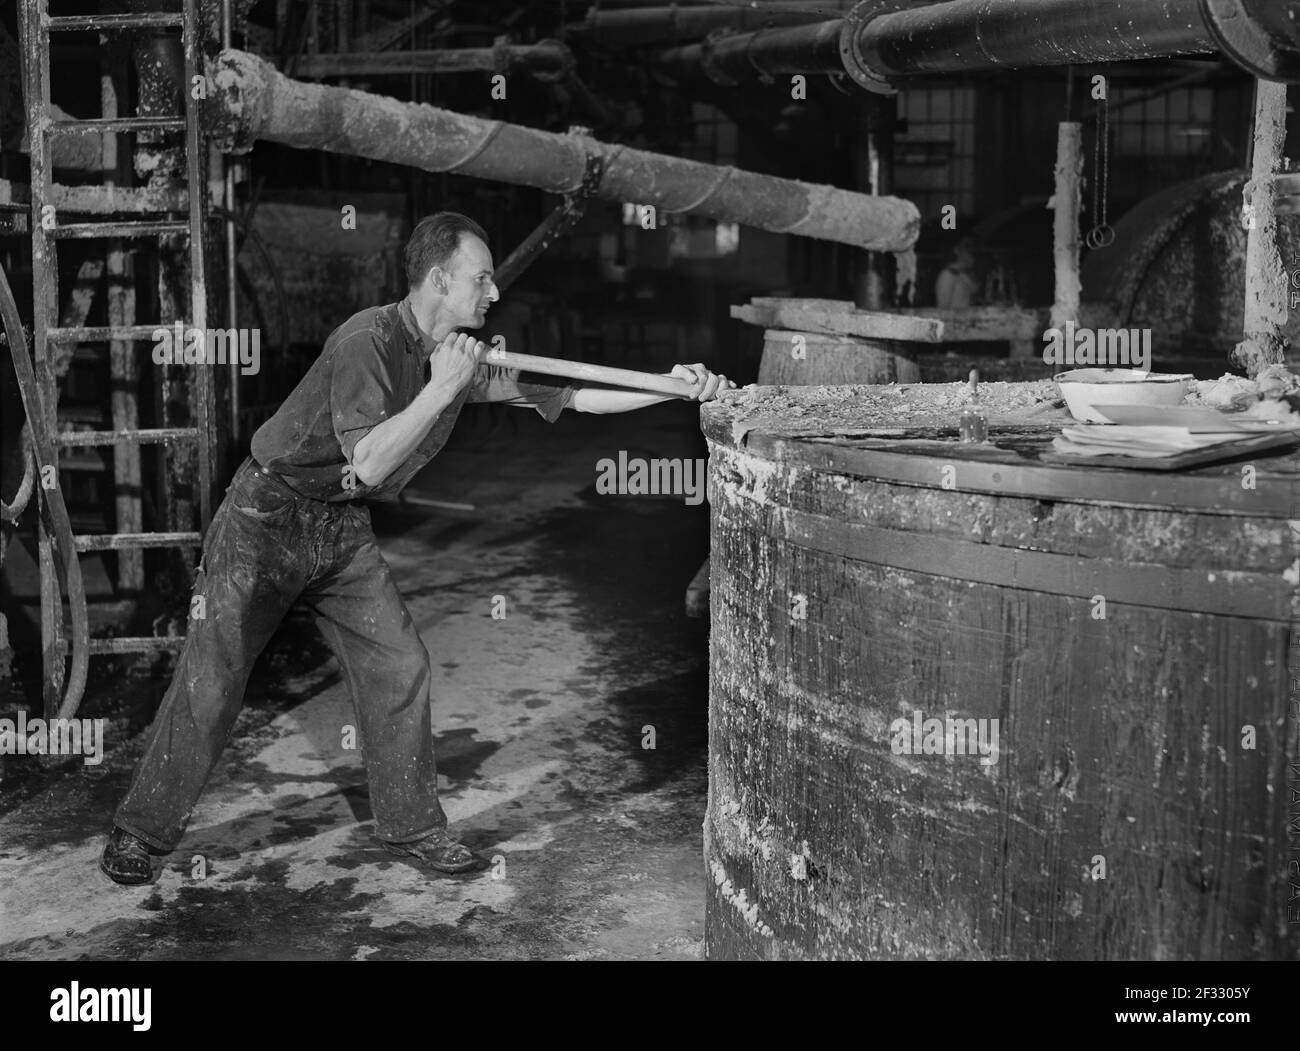 Lavoratore mescolando pasta di carta in grande IVA, Mississquoi Corporation Paper Mill, Sheldon Springs, Vermont, USA, Jack Delano, Ufficio delle informazioni di guerra degli Stati Uniti, settembre 1941 Foto Stock